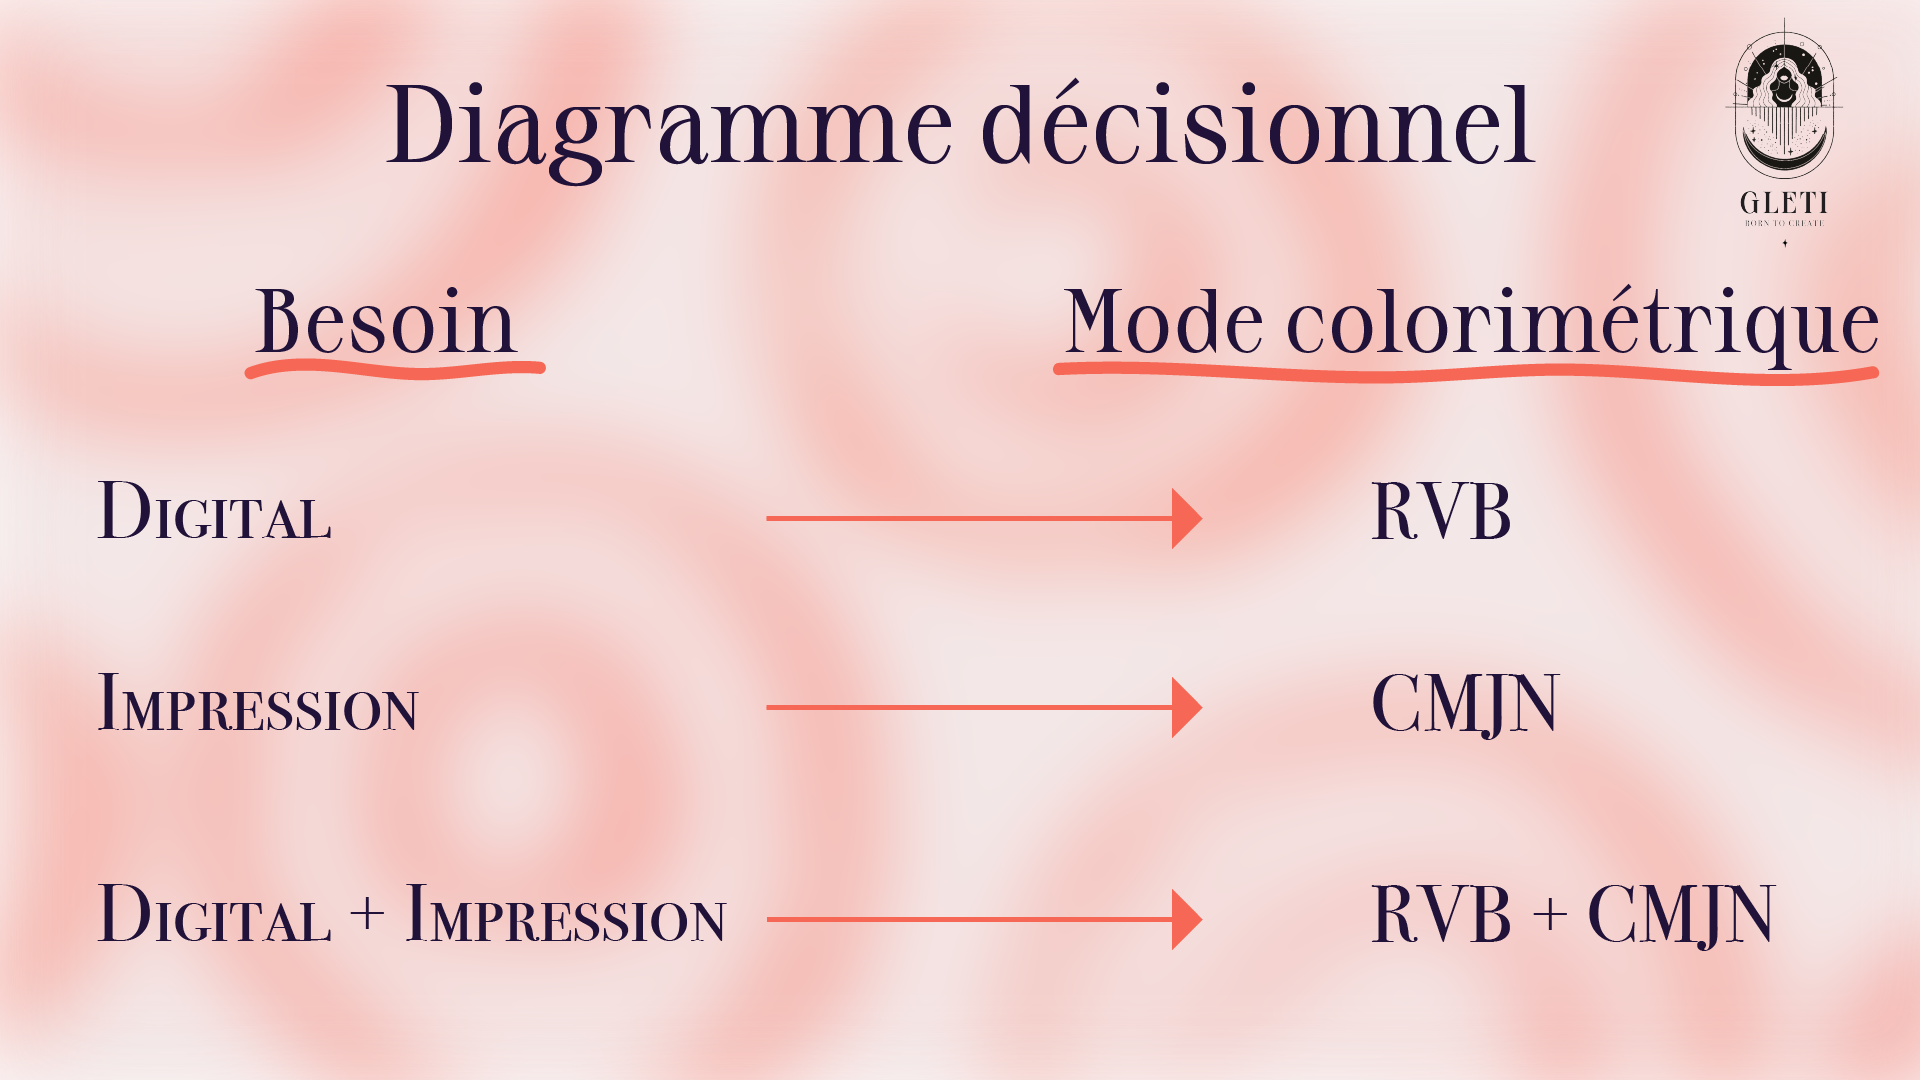 Diagramme décisionnel : Quel mode choisir entre RVB et CMJN